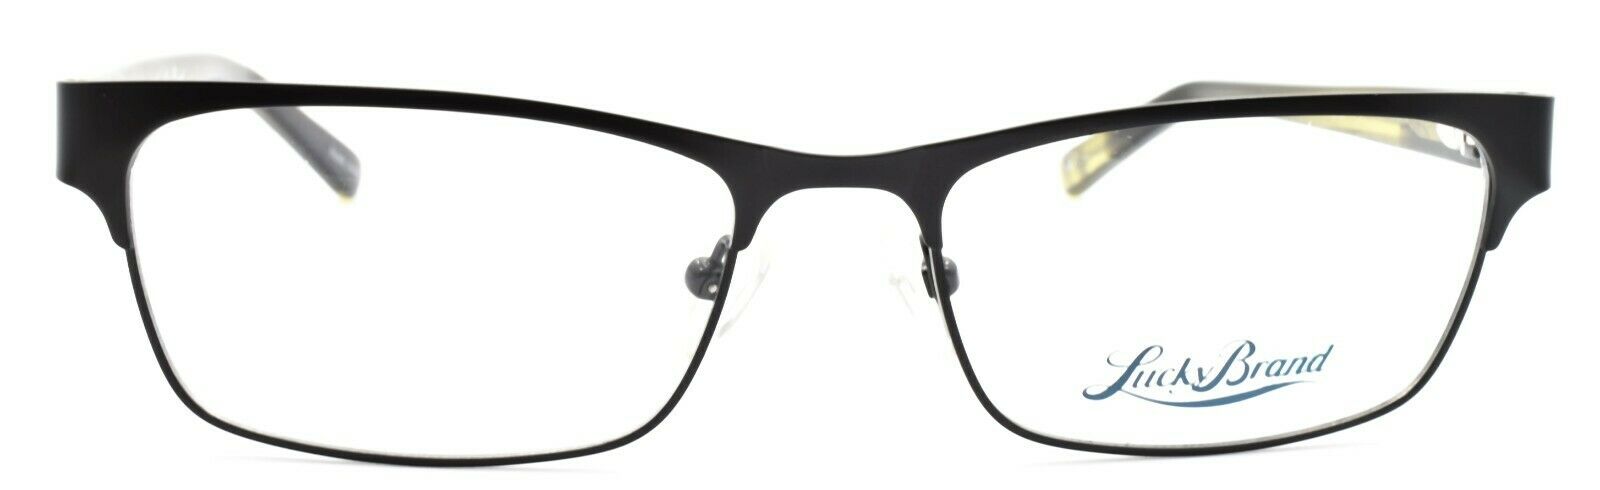 2-LUCKY BRAND D500 Men's Eyeglasses Frames 53-17-140 Black + CASE-751286275346-IKSpecs